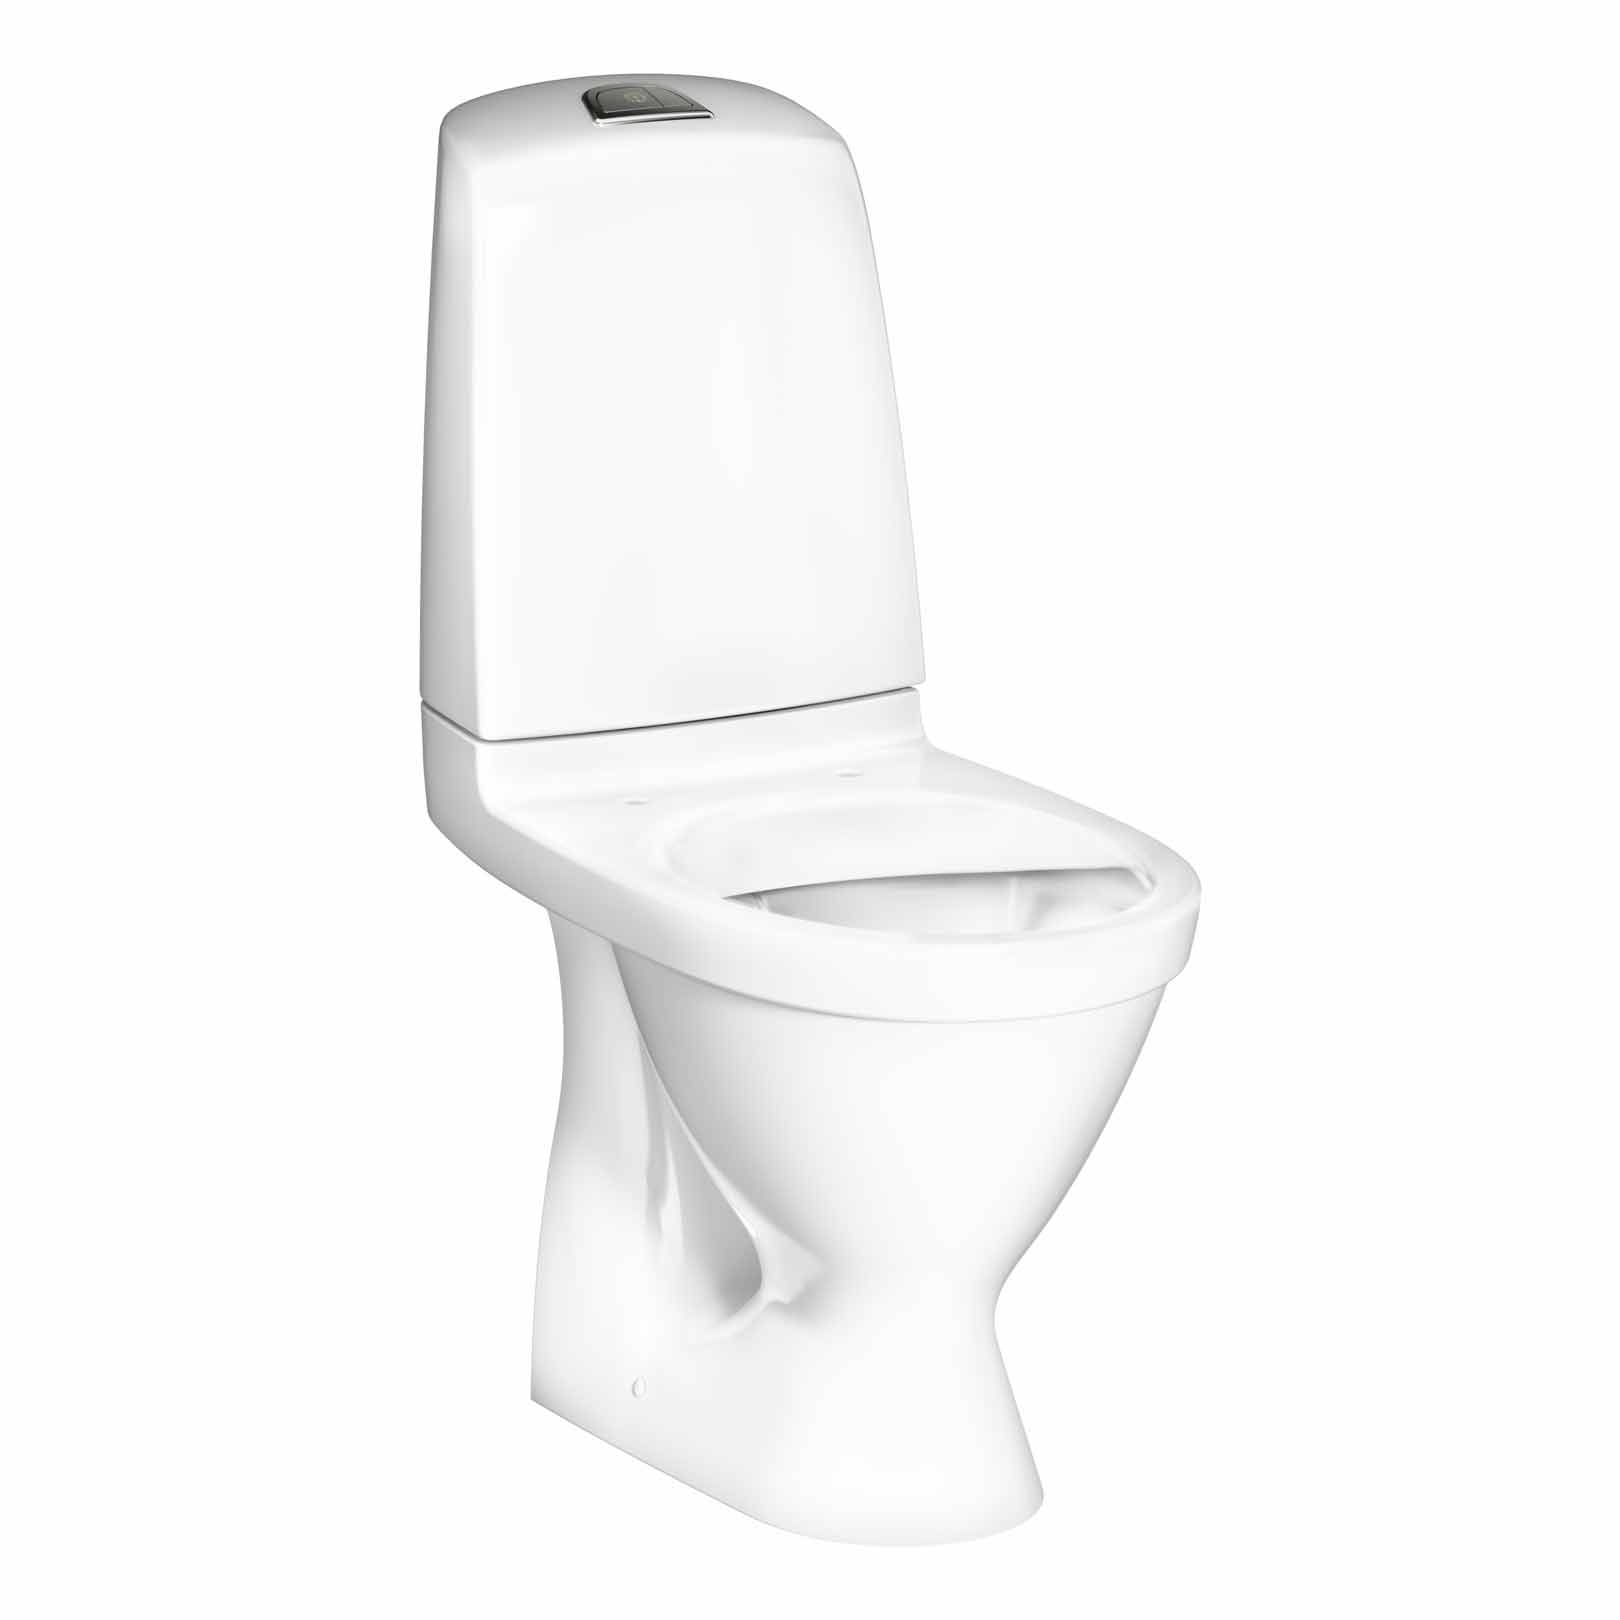 Toalettstol Gustavsberg Nautic 1510 Hygienic Flush